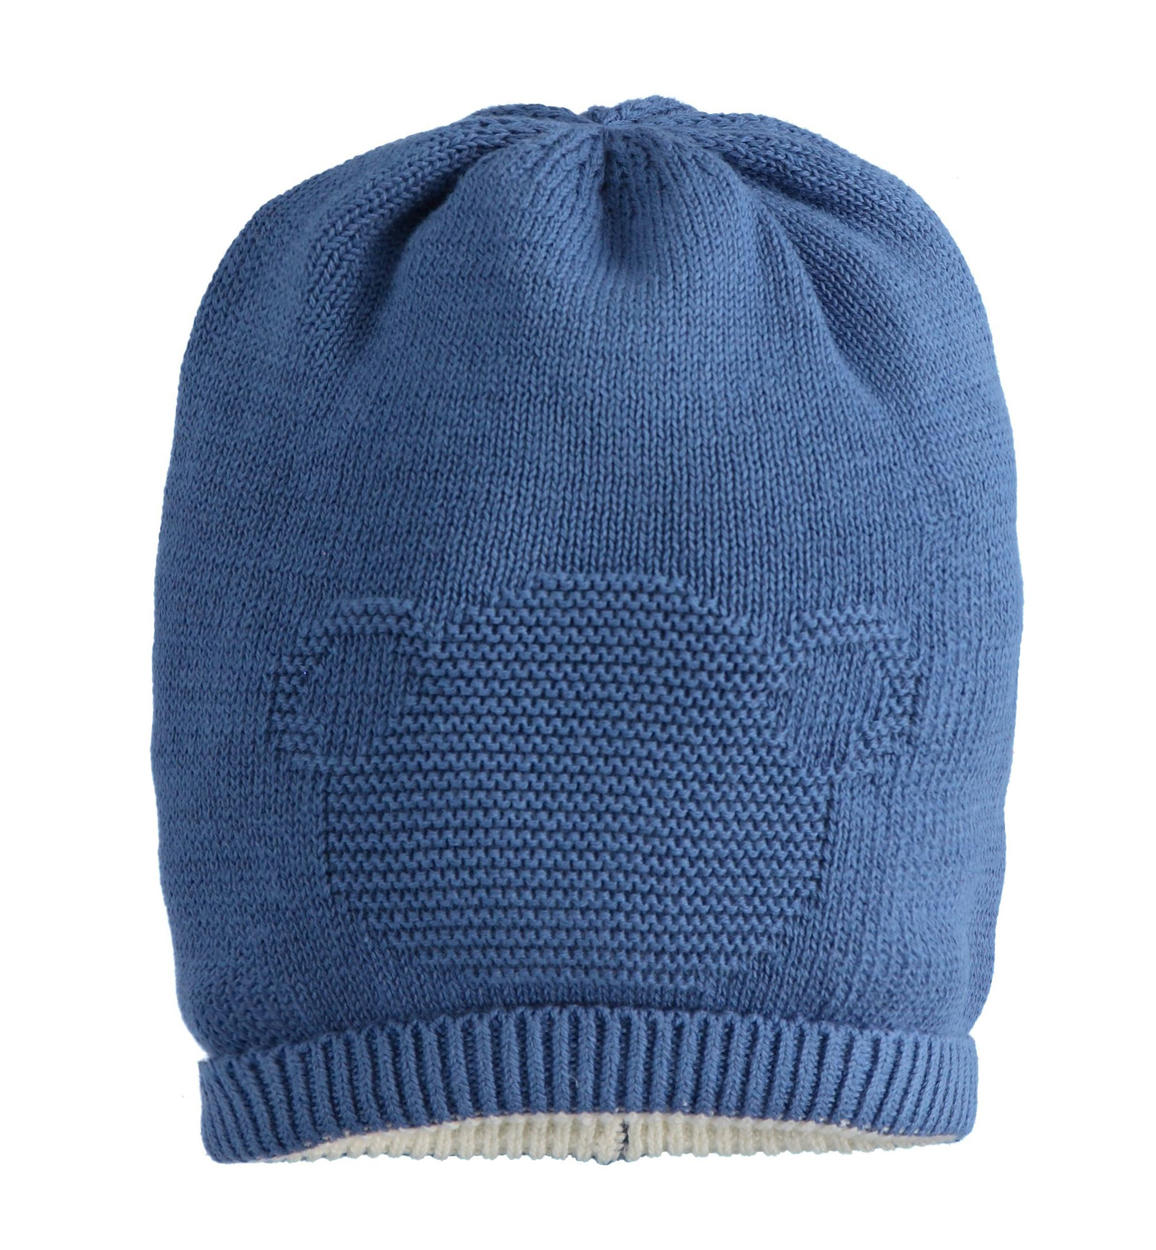 Cappello neonato modello cuffia 100% cotone ricamo orsetto da 0 a 24 mesi  Minibanda